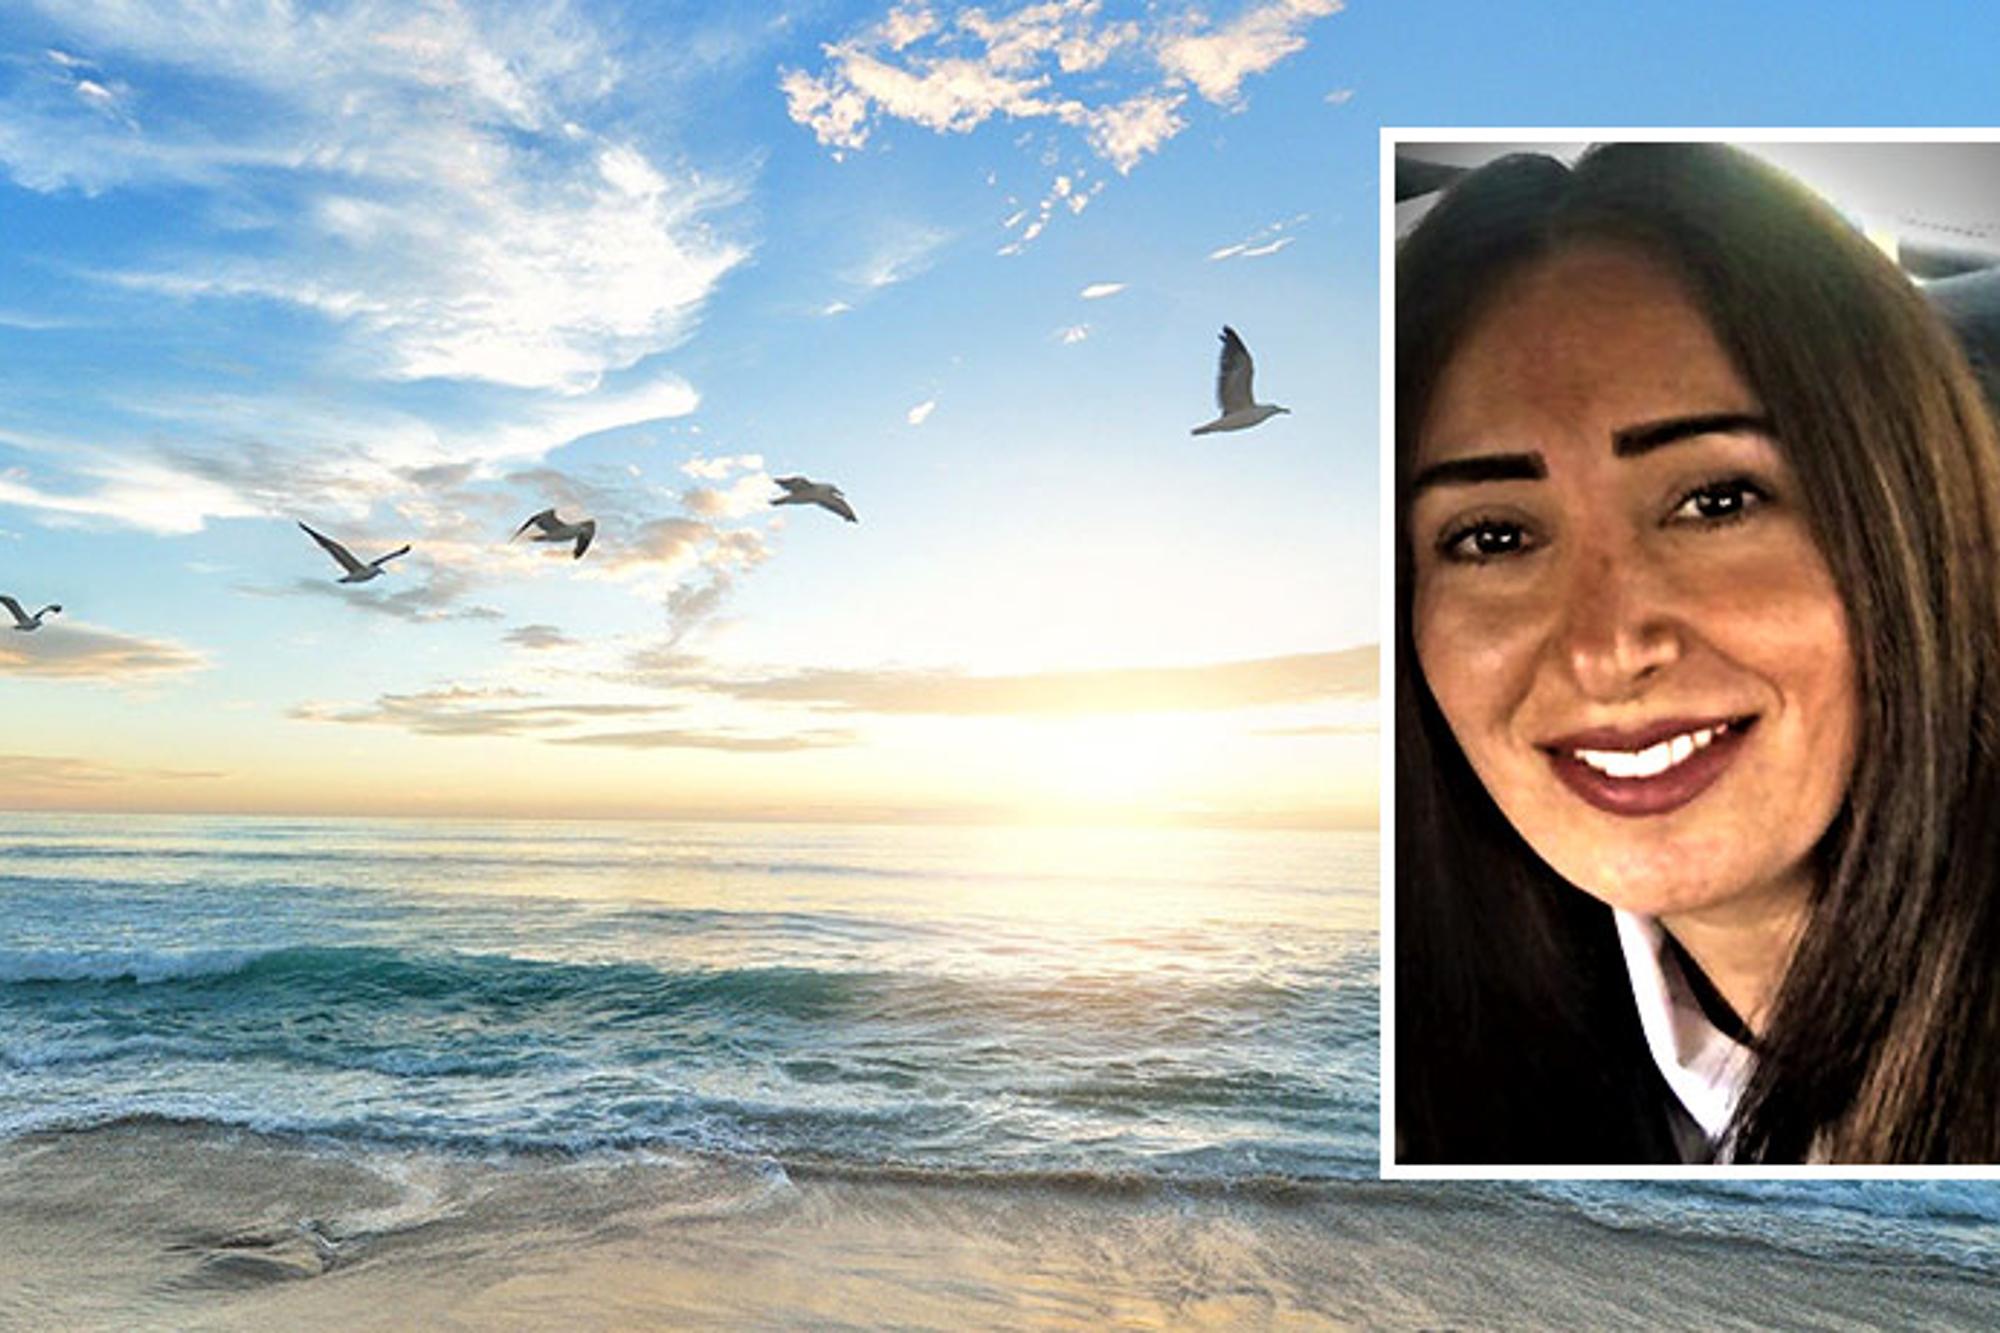 Till vänster: En sandstrand med några fåglar som flyger ovanför havet. Till höger: Porträttbild av Katherine Tepsi.